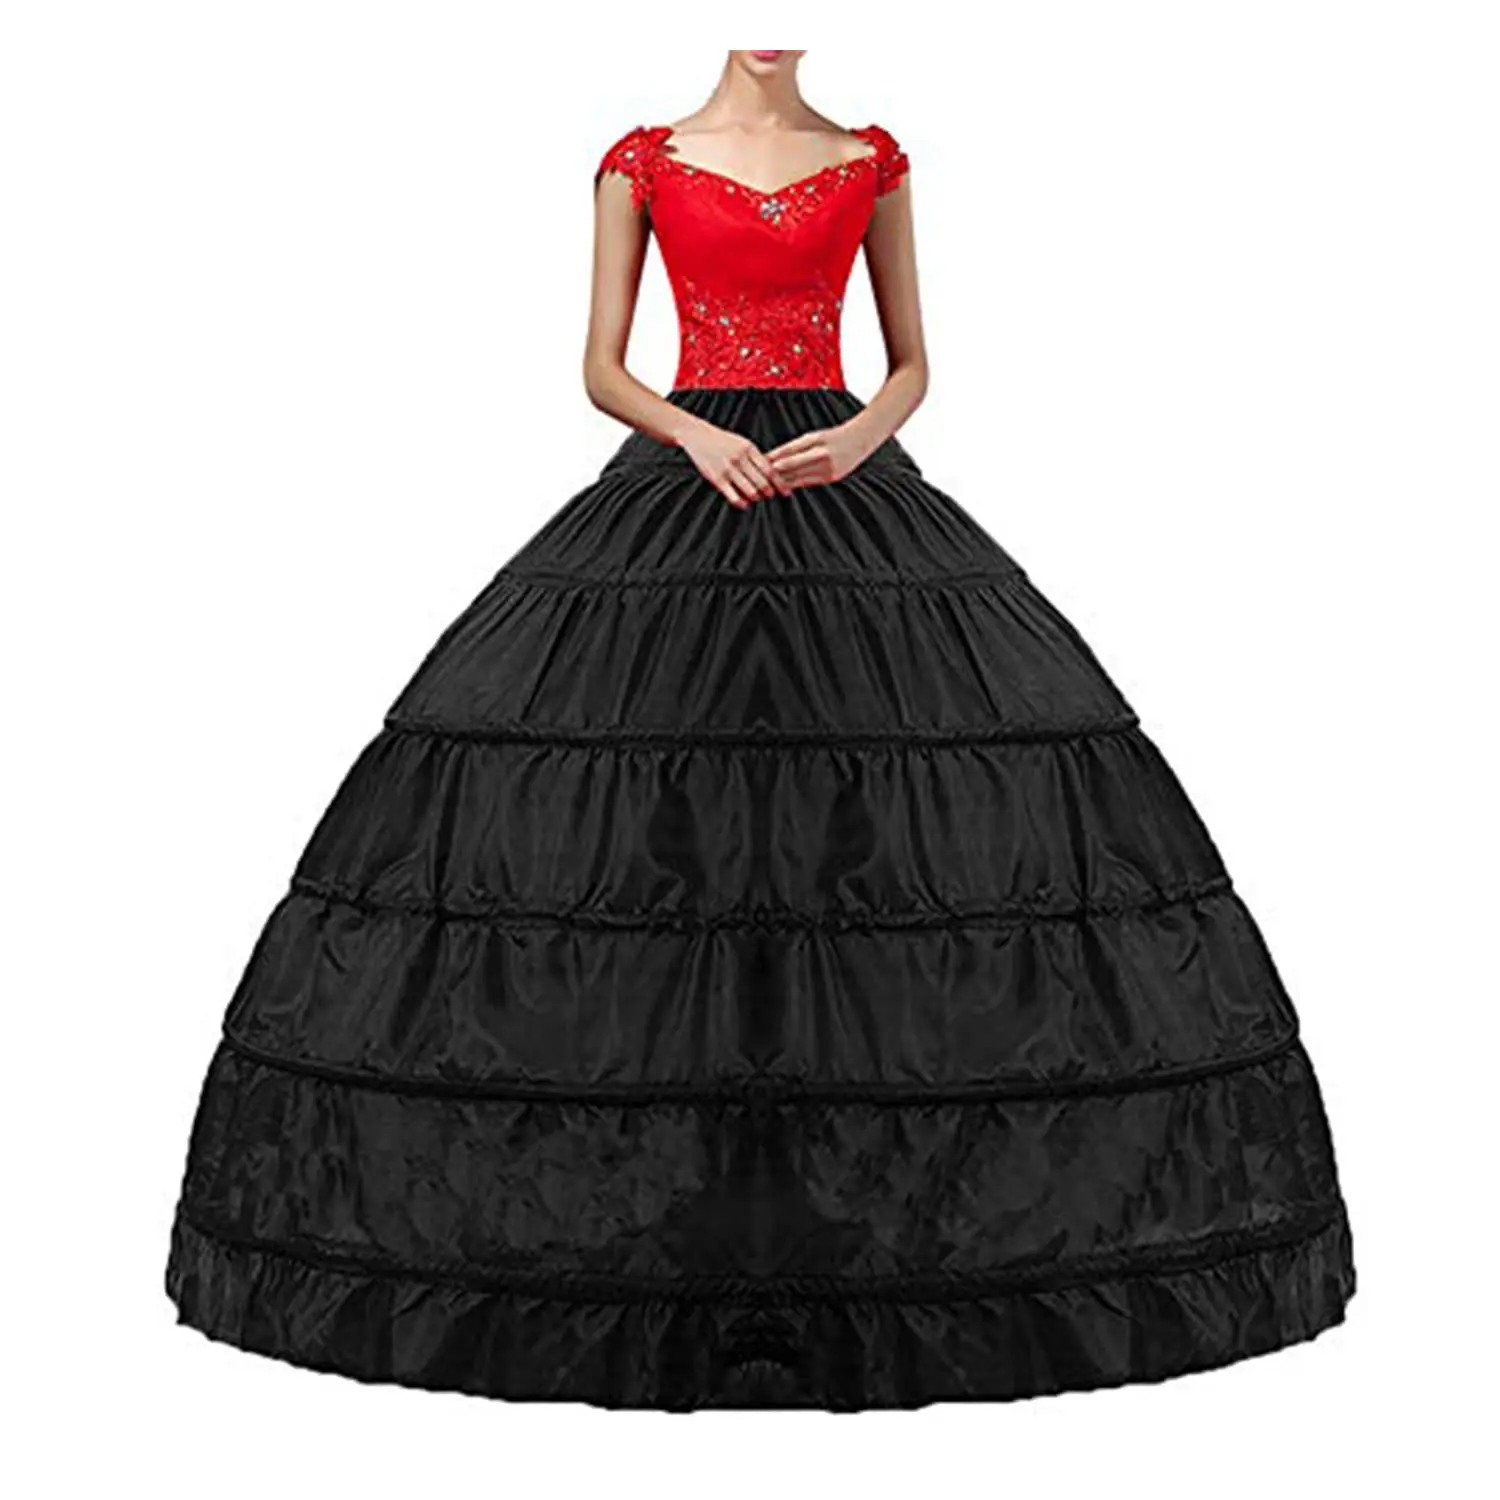 

Women Crinoline Hoop Petticoats Skirt Slips Floor Length Underskirt for Ball Gown Wedding Dress